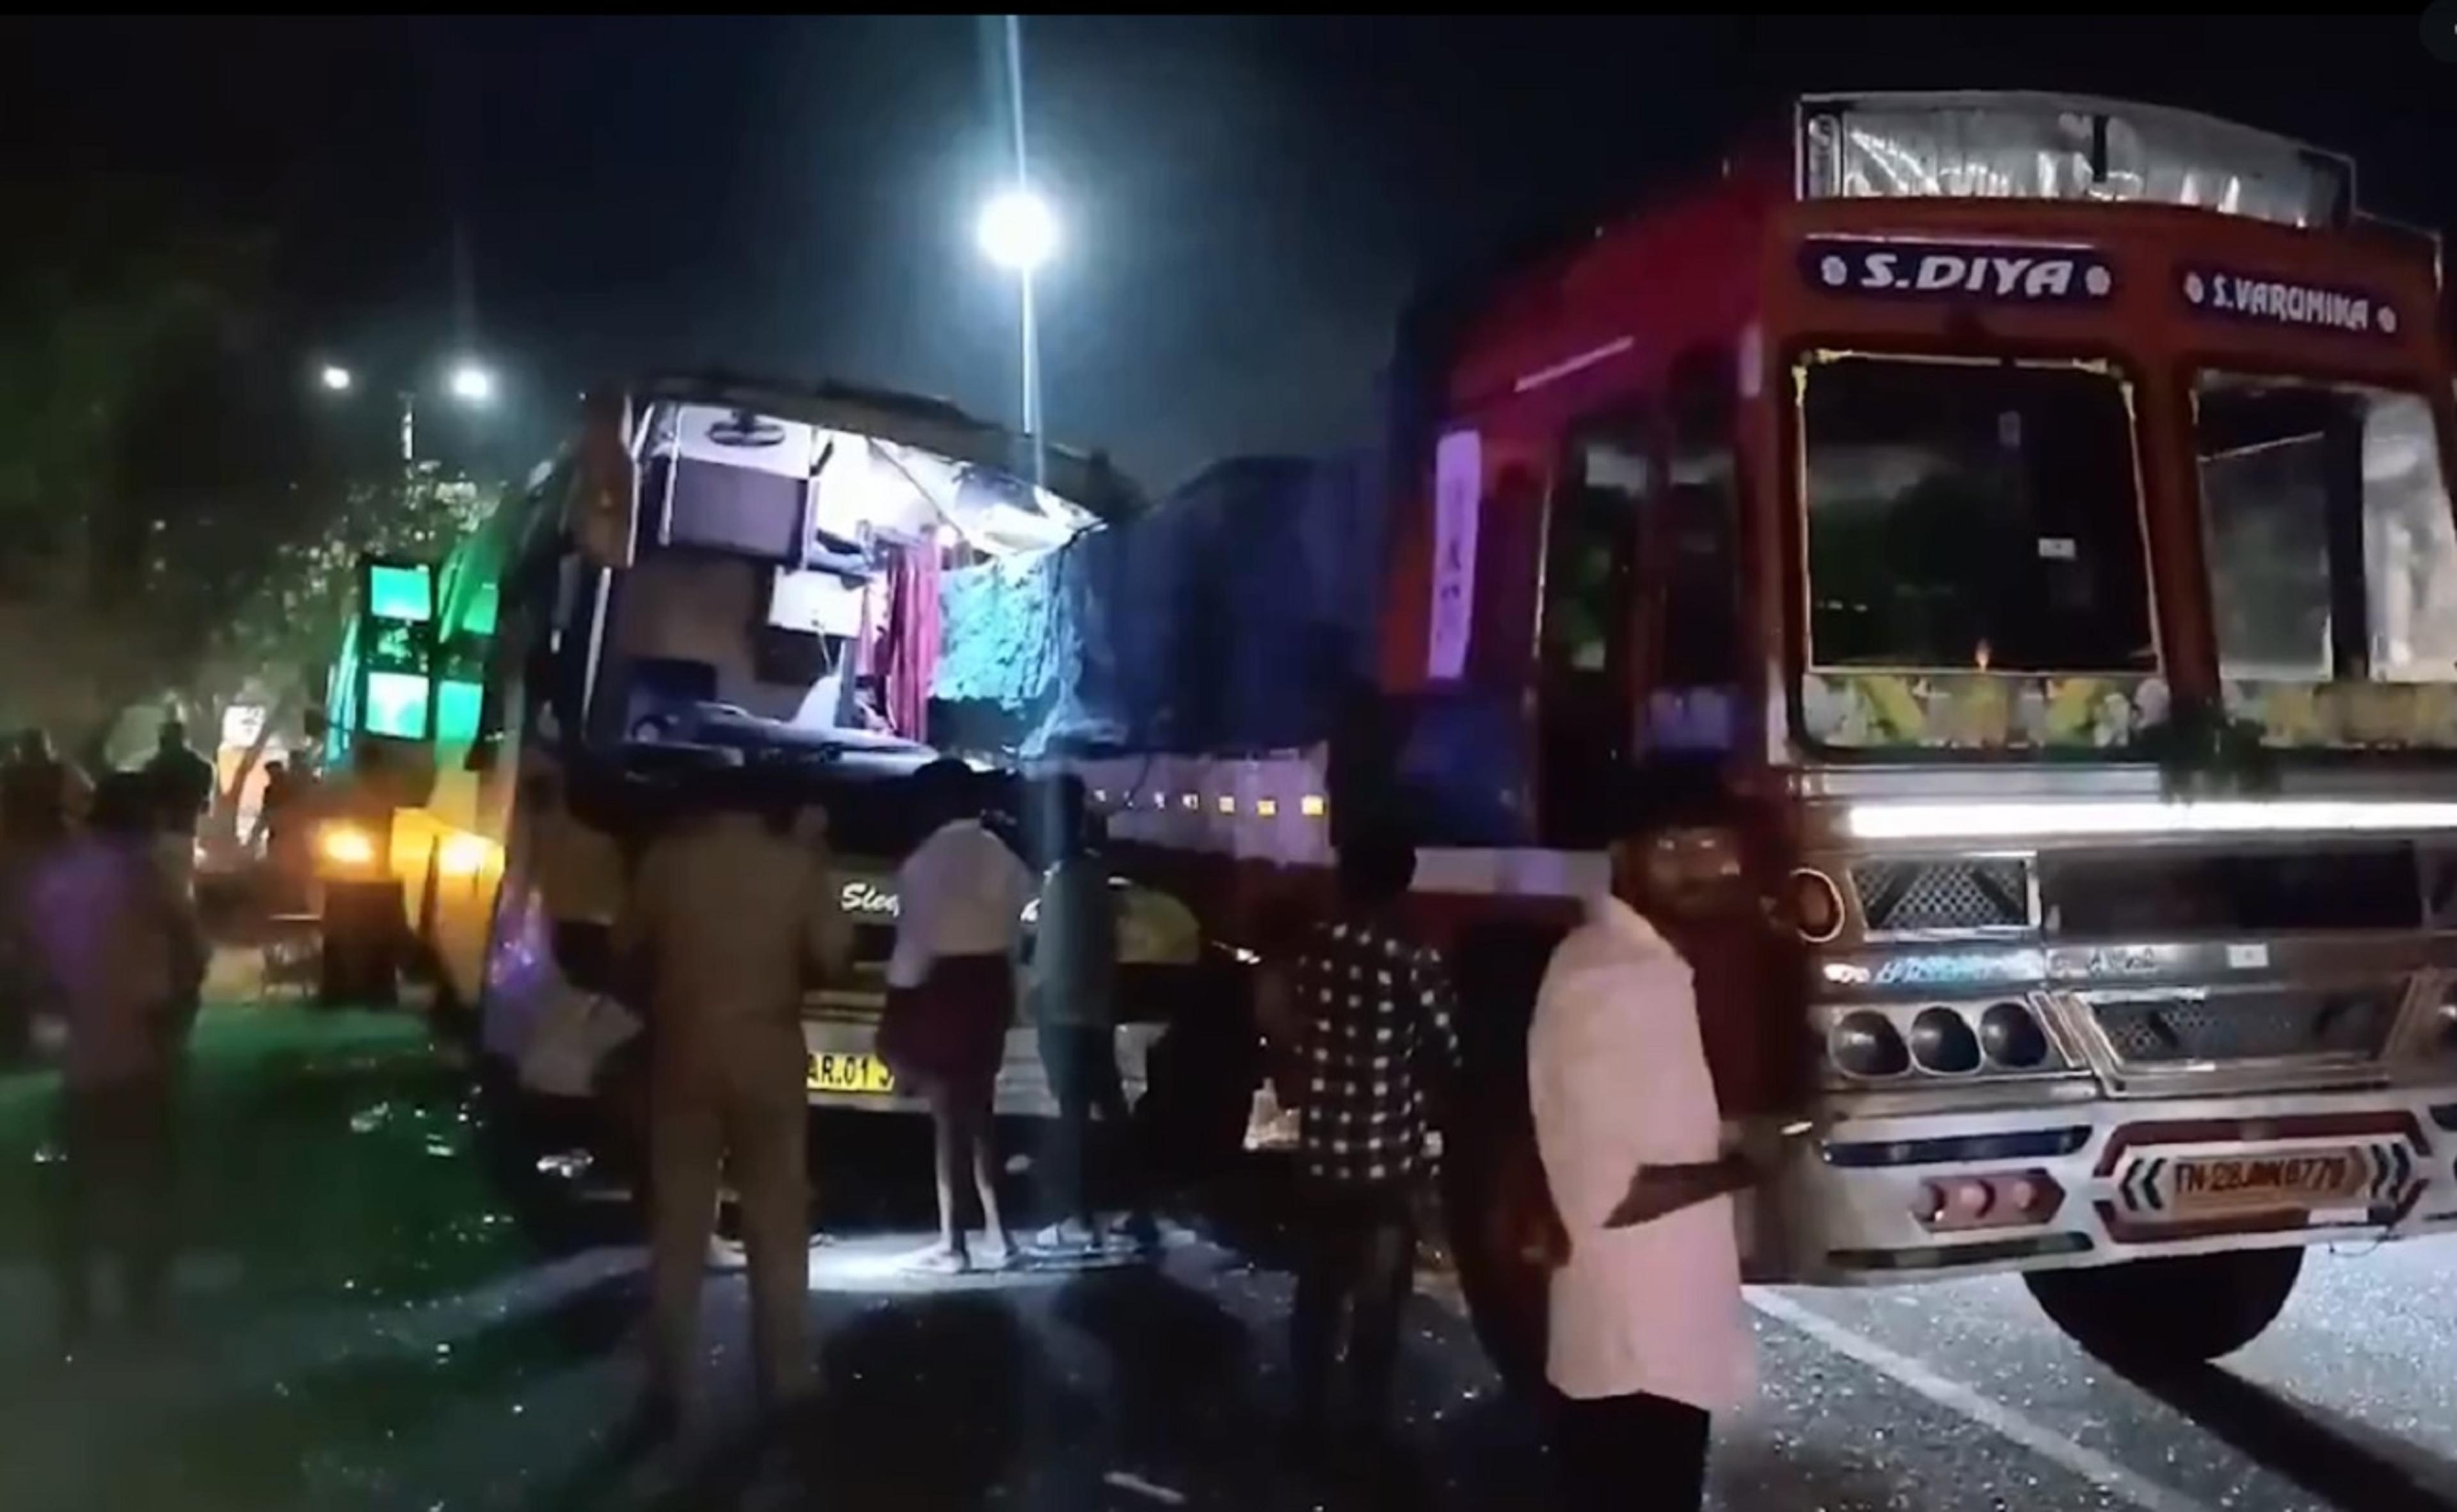 Chennai-Trichy highway पर ओवरटेक करने के चक्कर मेंखड़े ट्रक में घुसी बस, 4 लोगों
की मौत